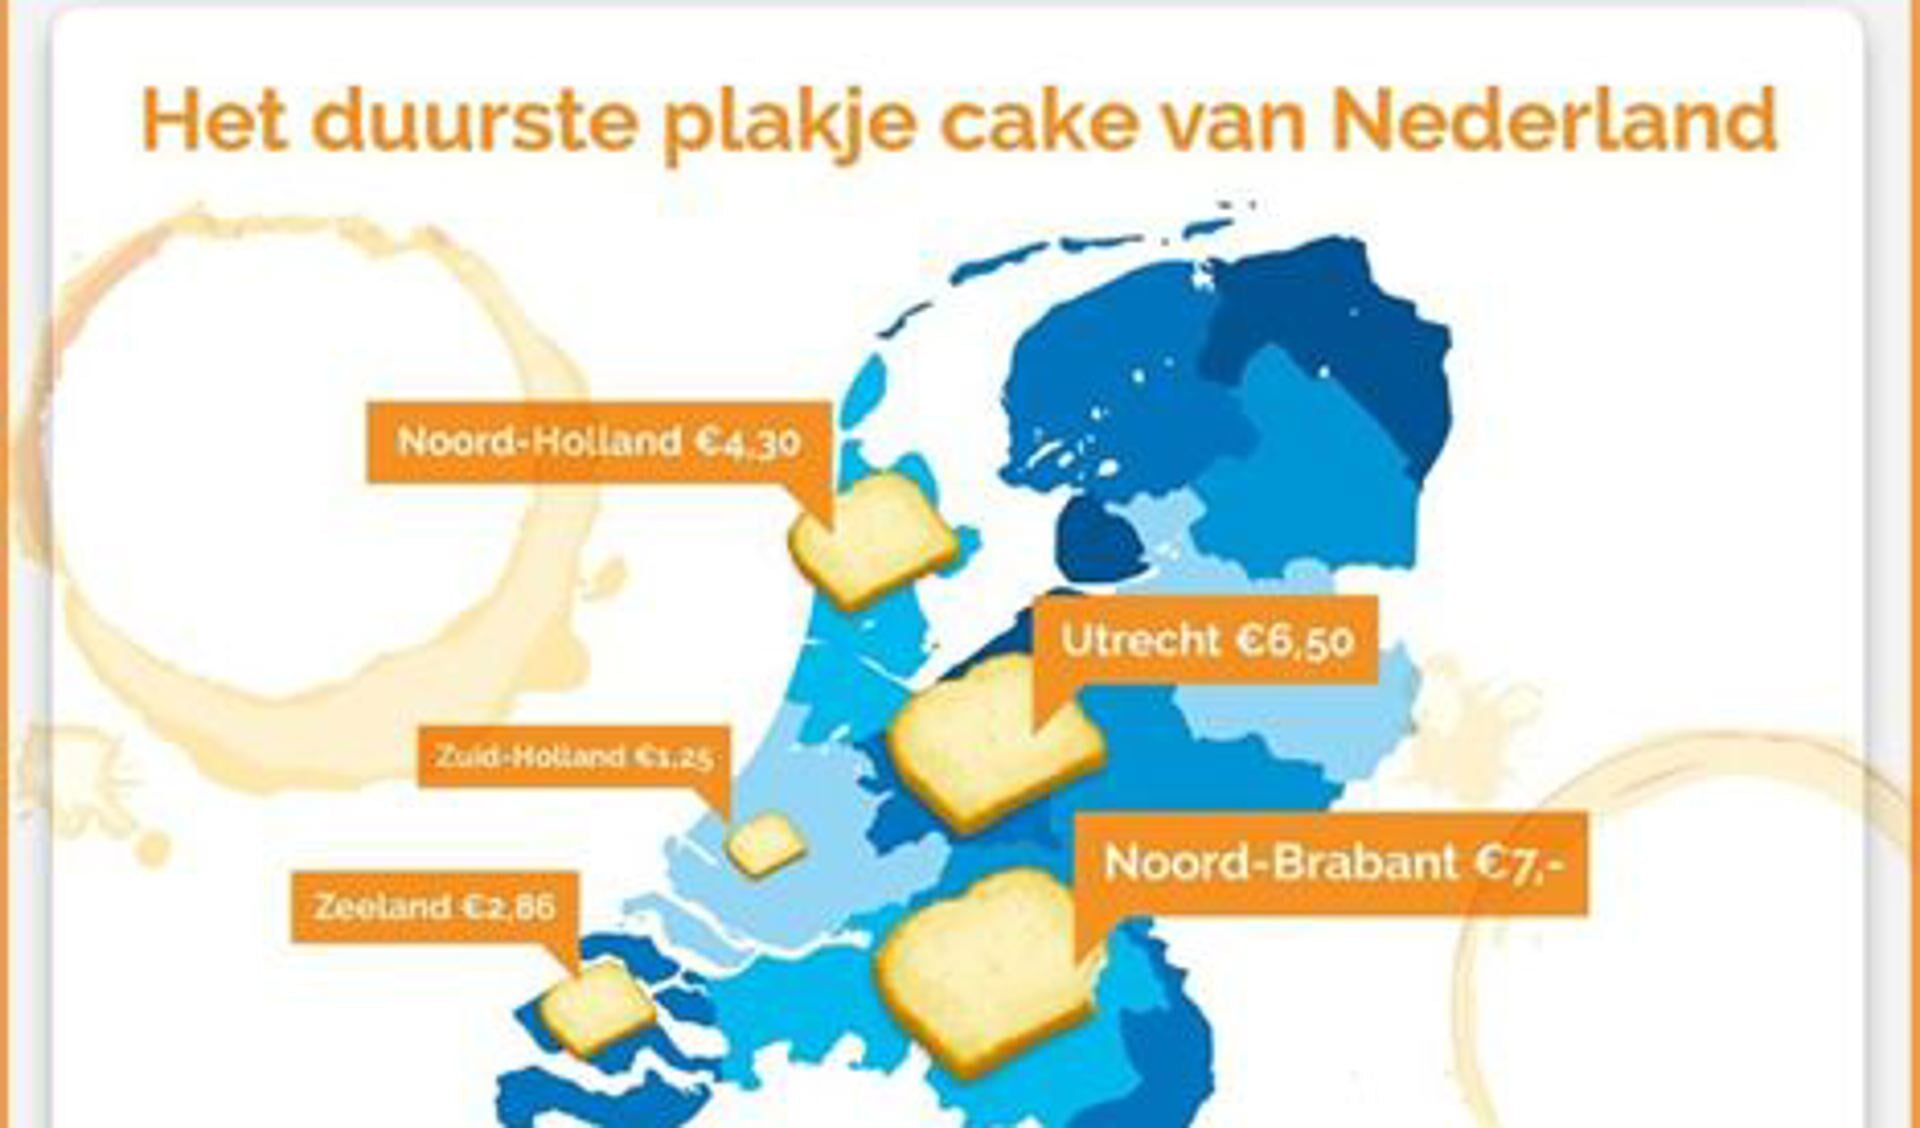 De cake is betaalbaar in onze regio.